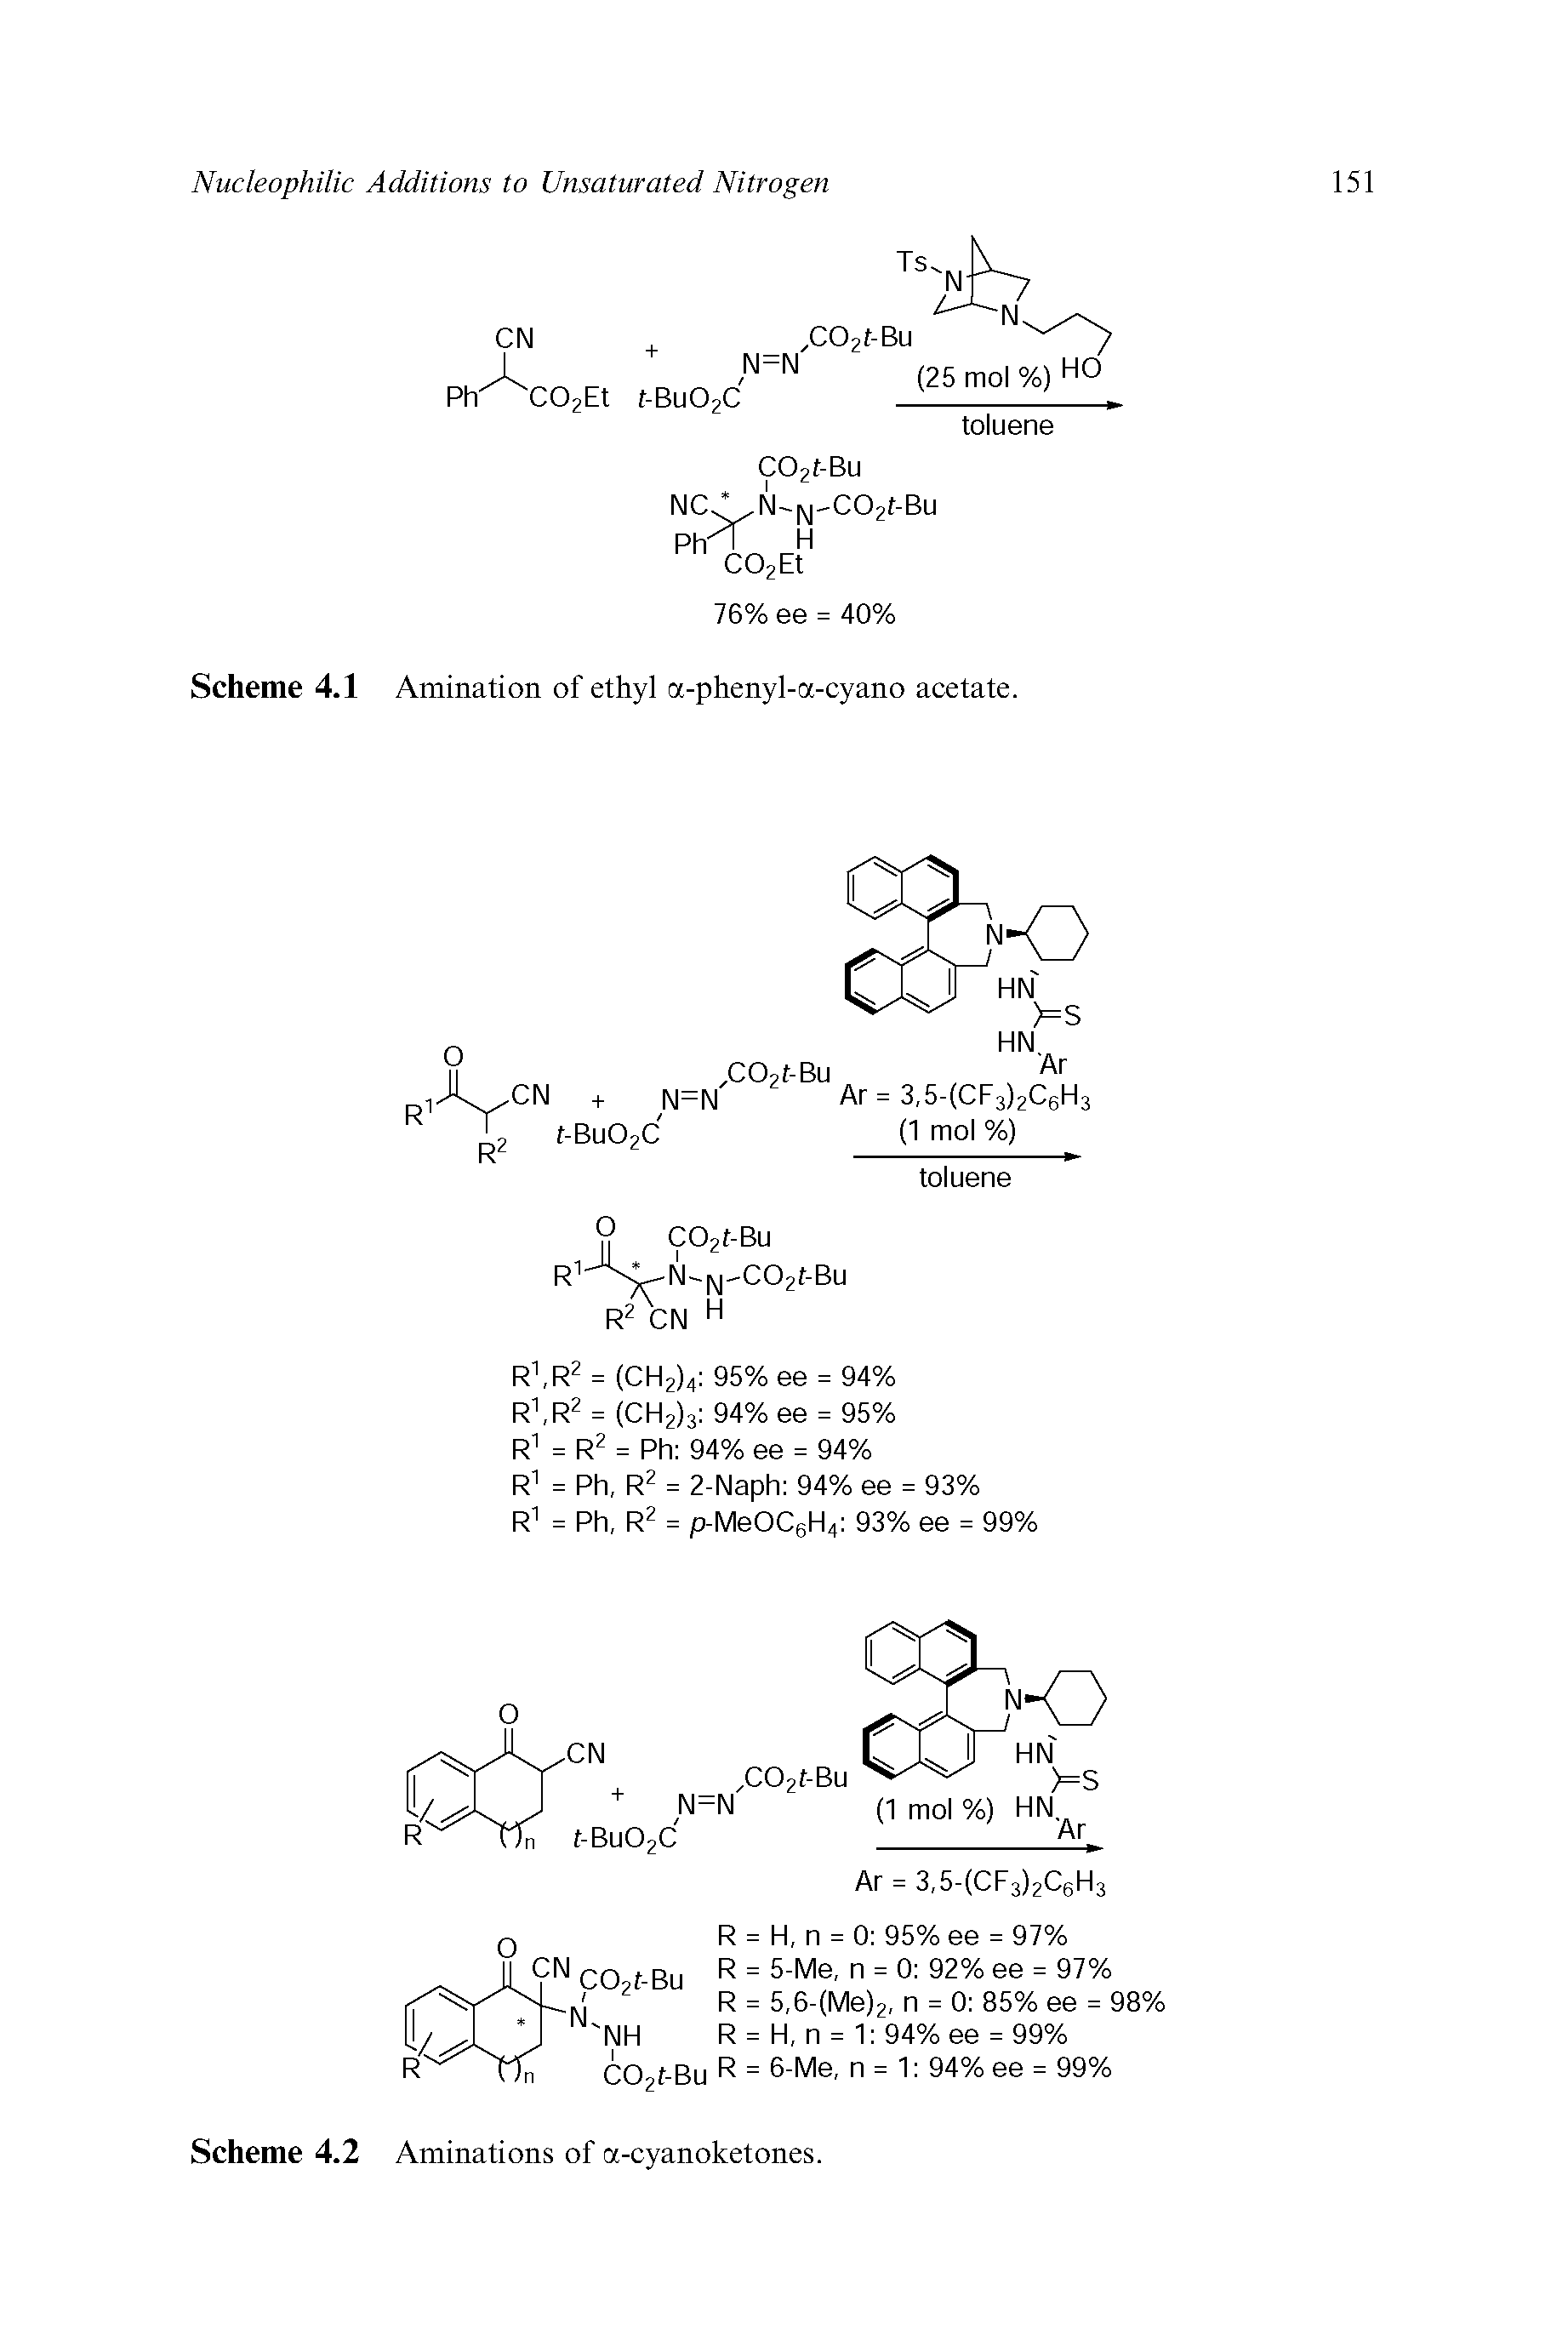 Scheme 4.1 Amination of ethyl a-phenyl-a-cyano acetate.